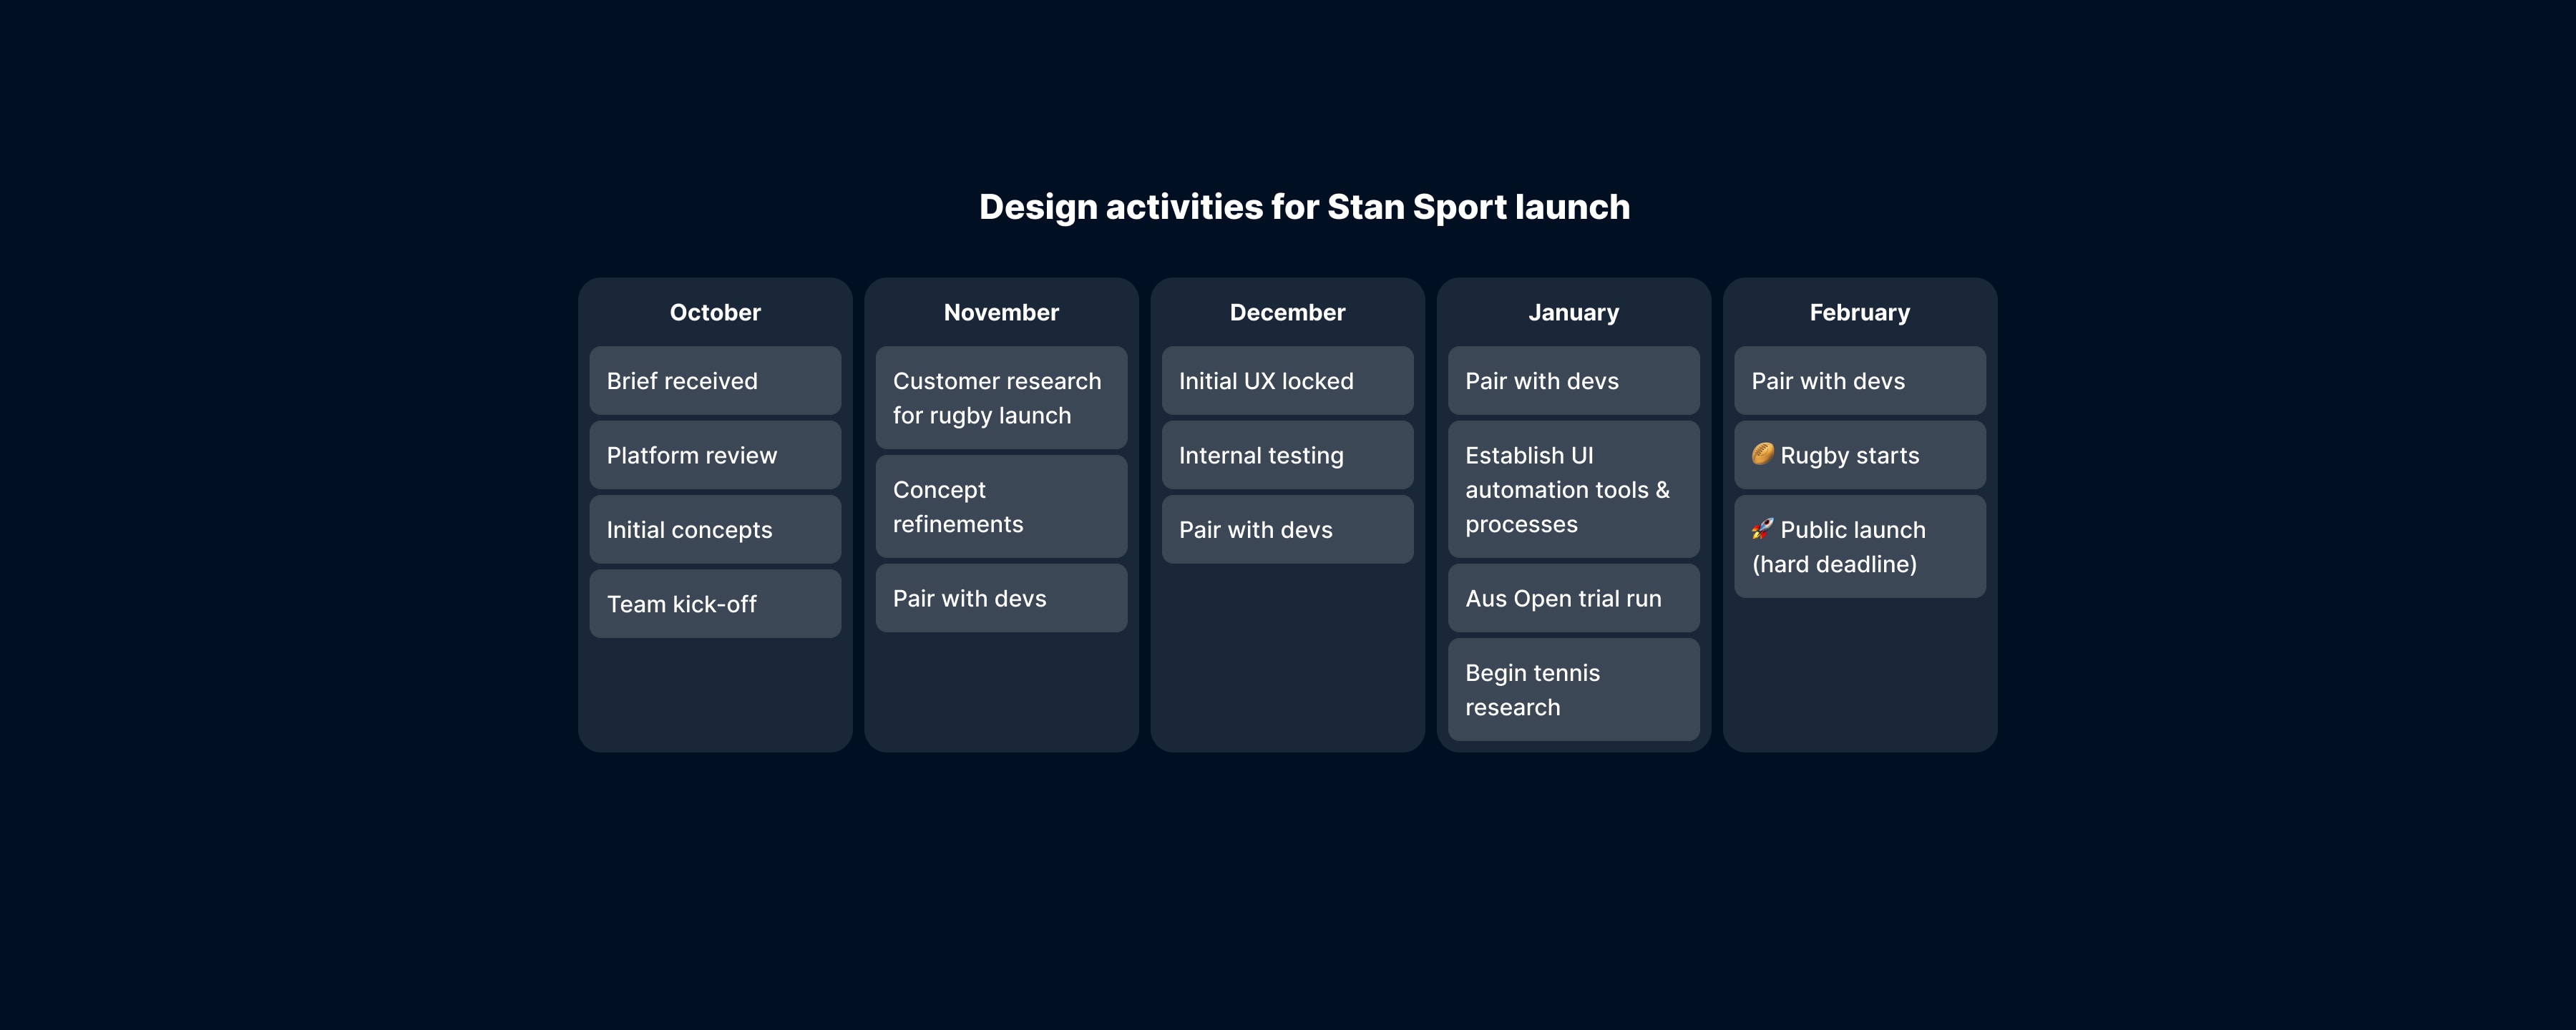 Design activities for Stan Sport launch